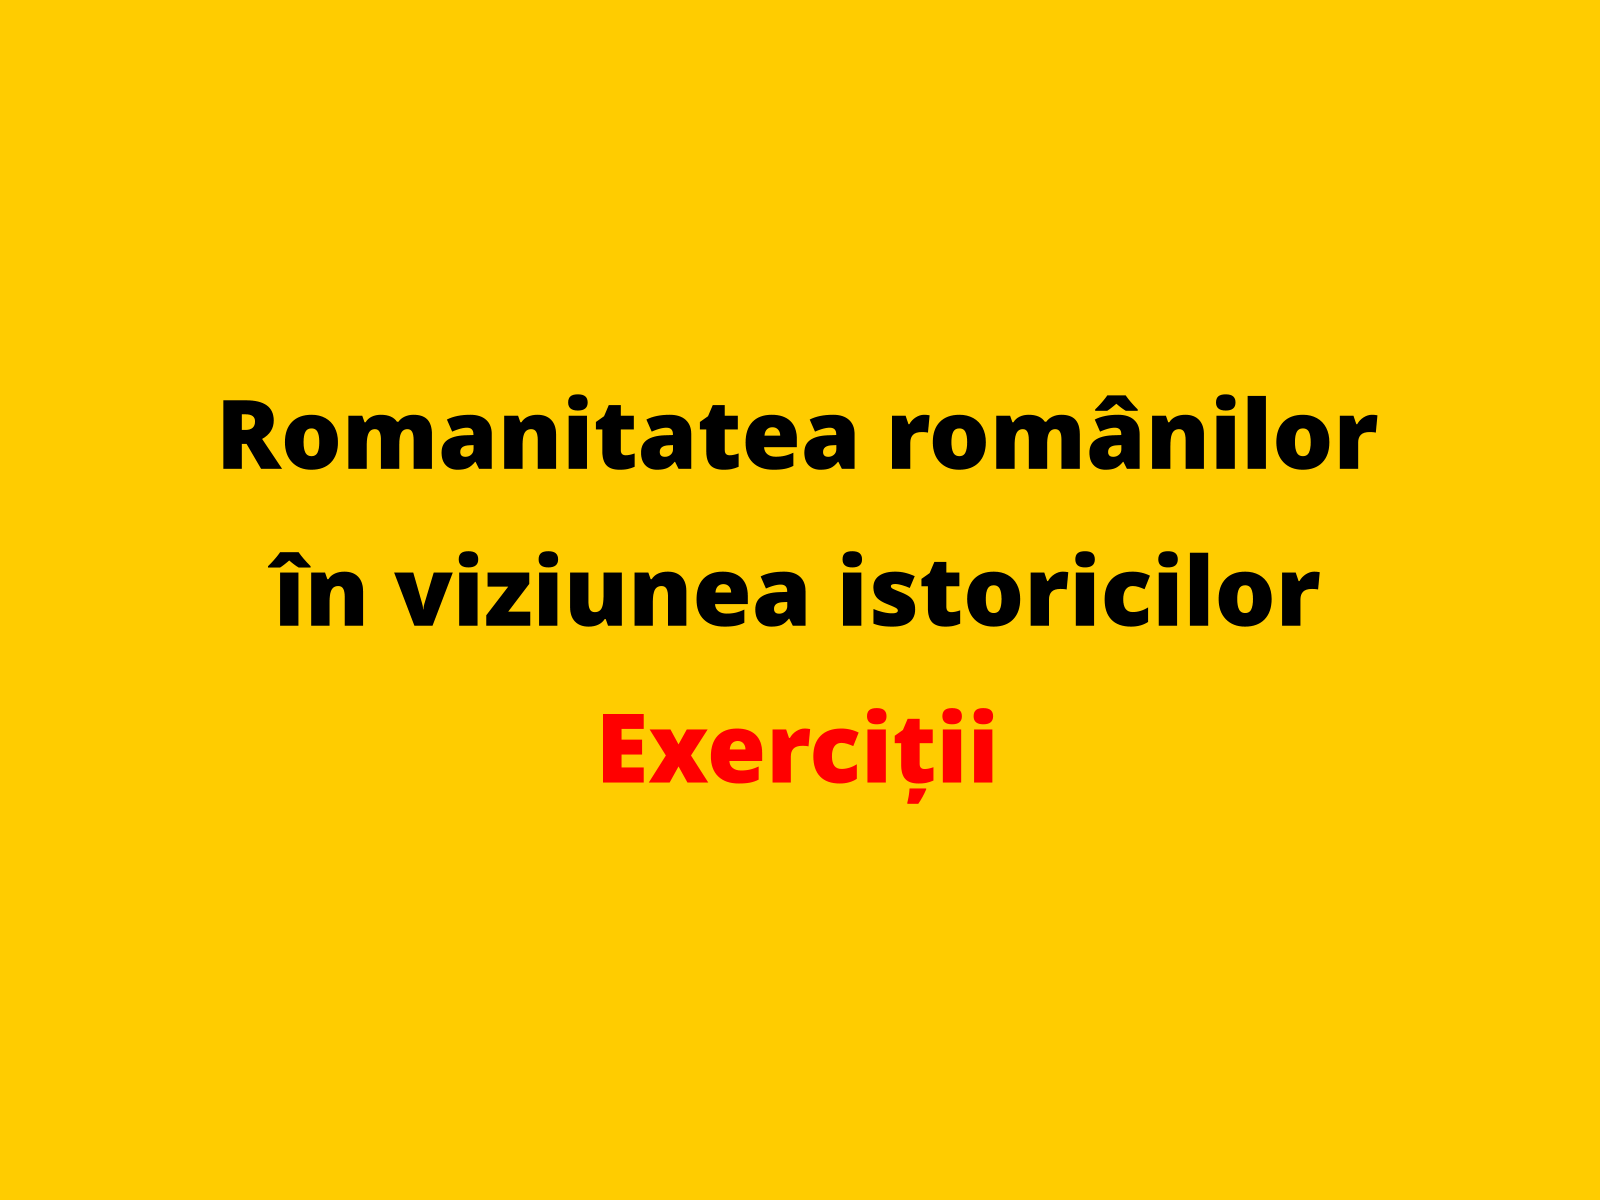 Prezentați două aspecte din secolul al XX-lea referitoare la romanitatea românilor